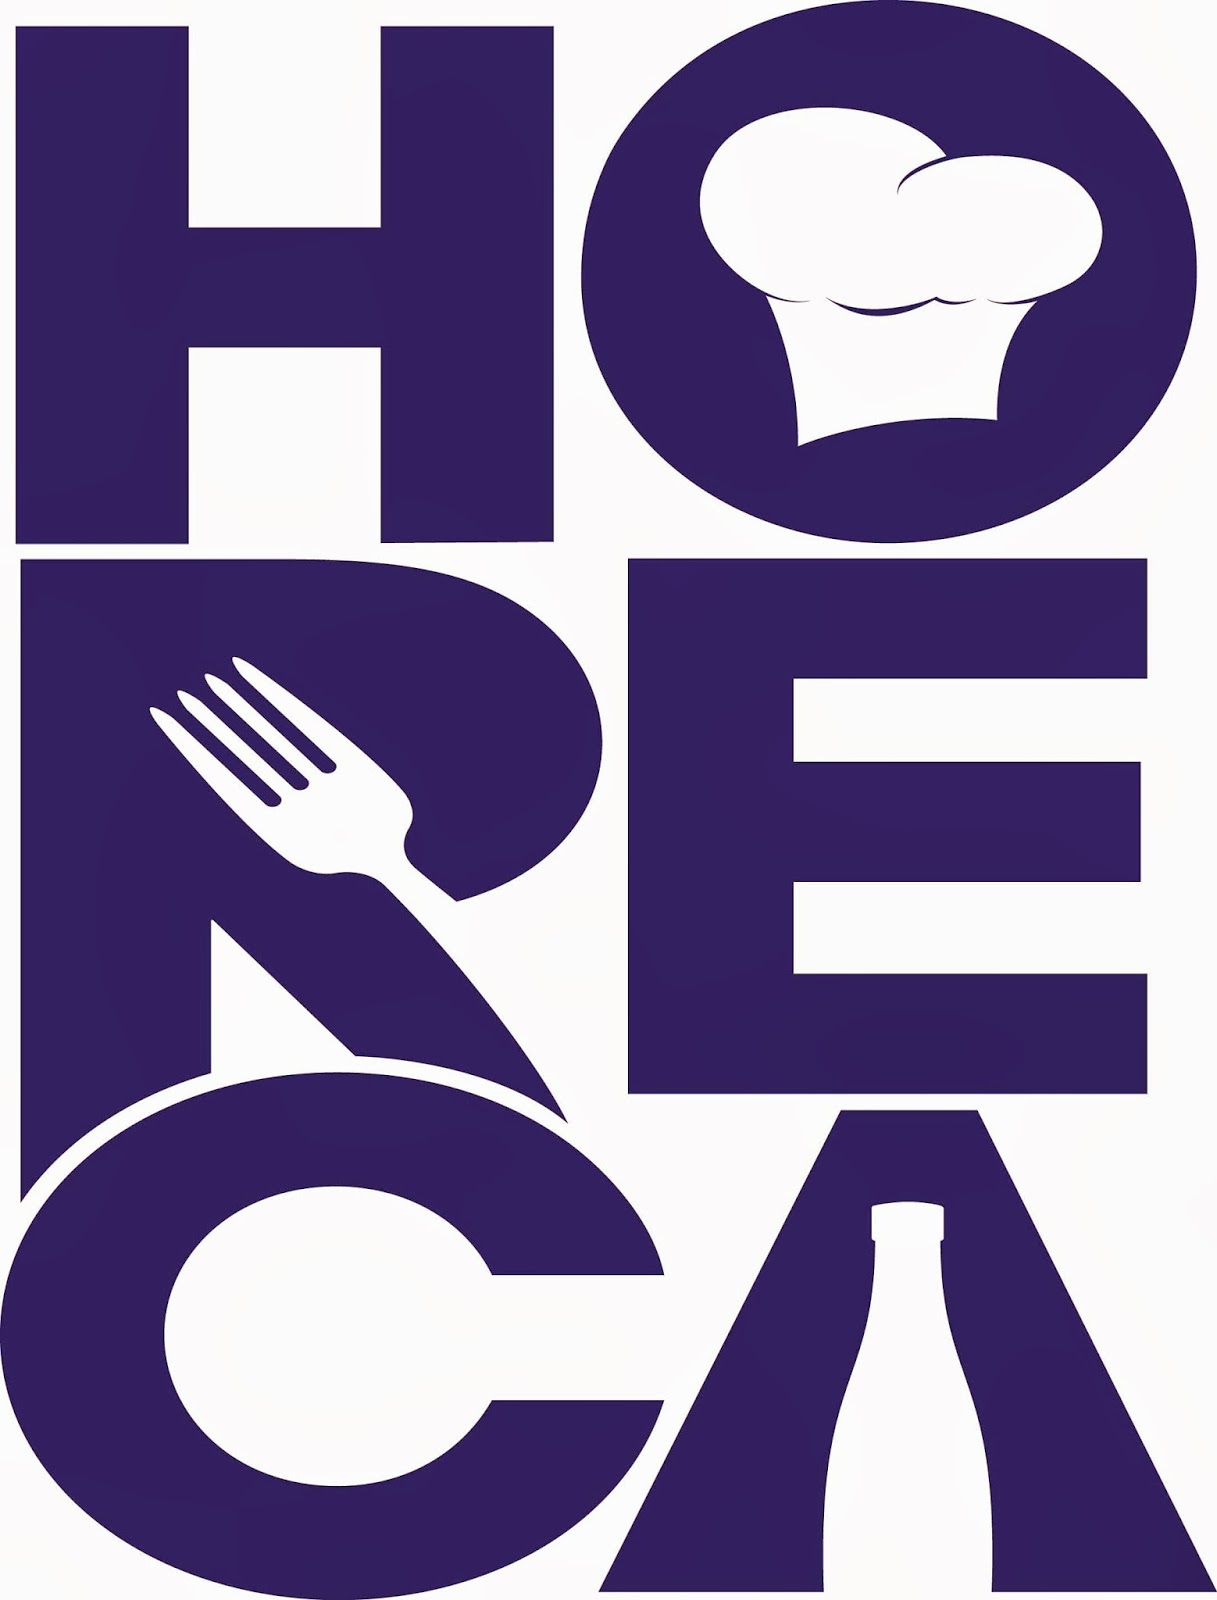  HORECA Trade HORECA Trade The Leading Food Service Partner